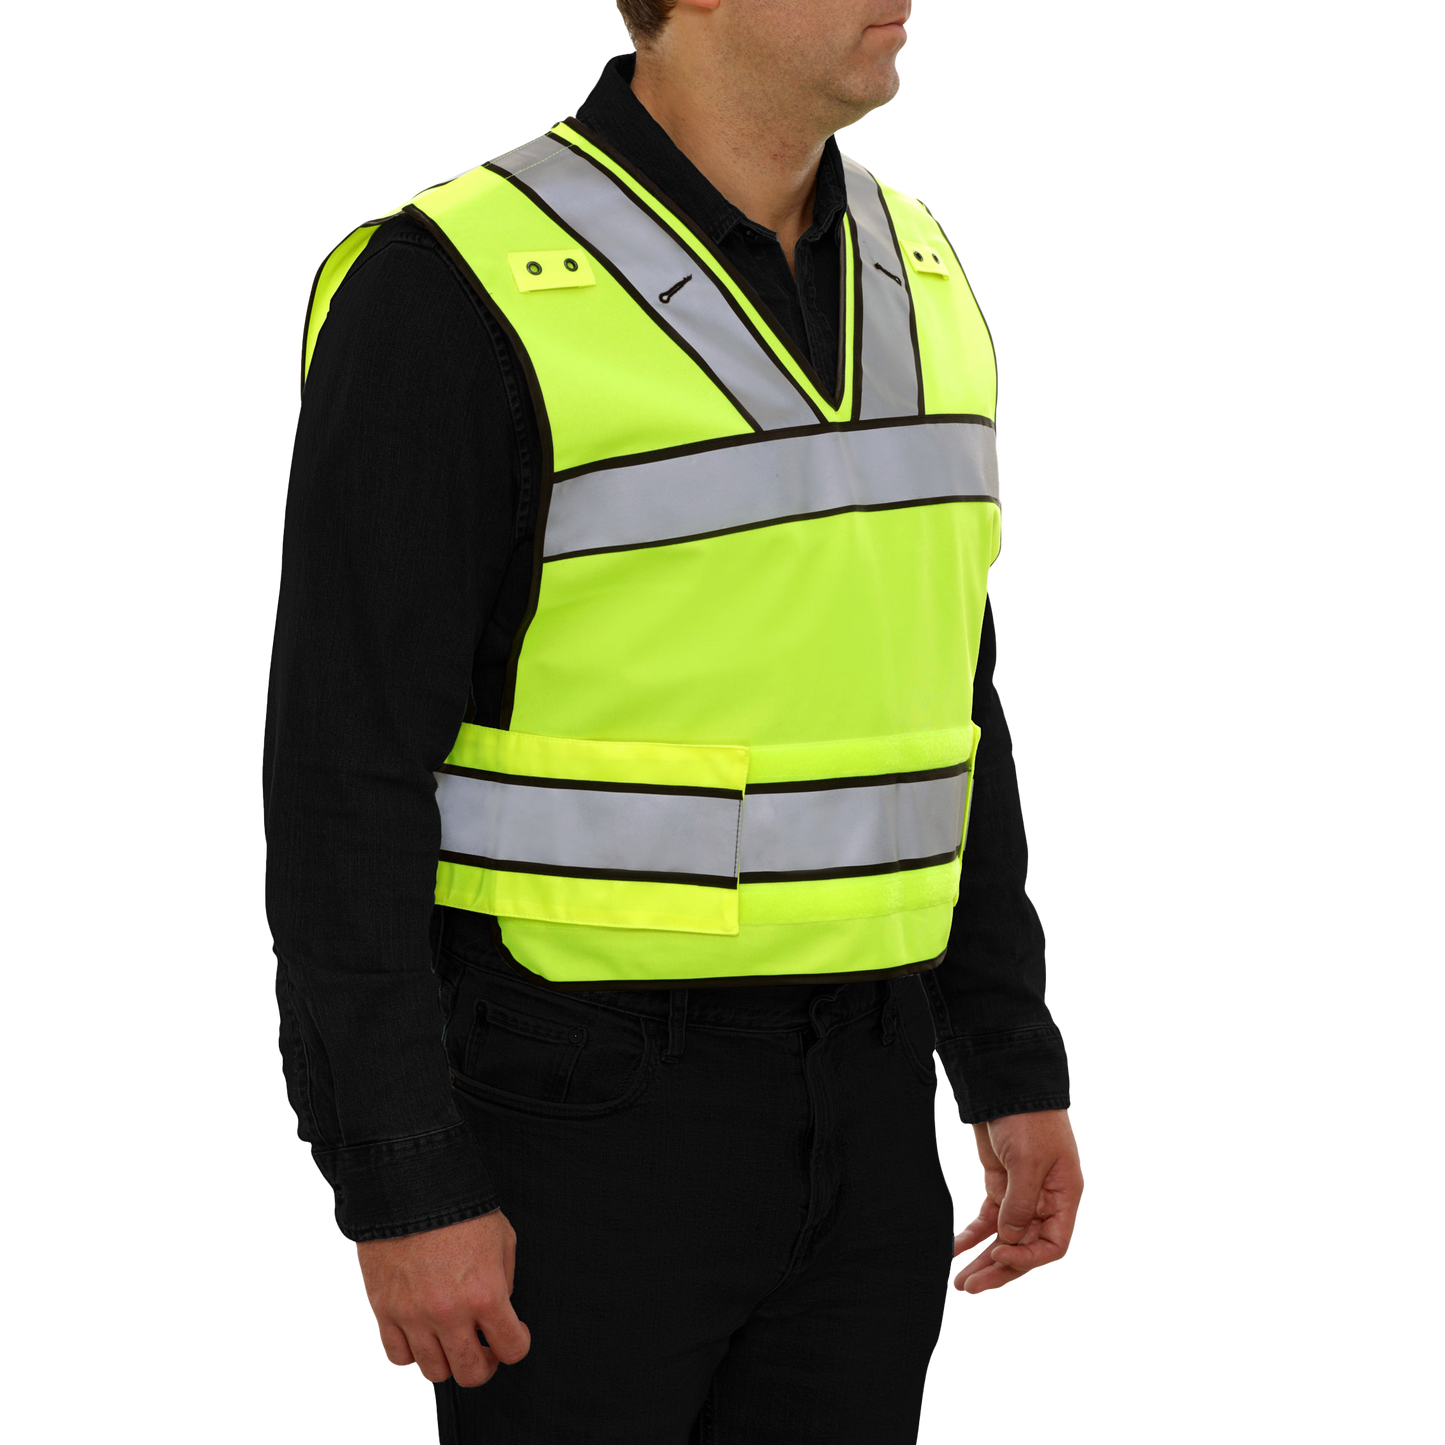 Breakaway Public Safety Vest